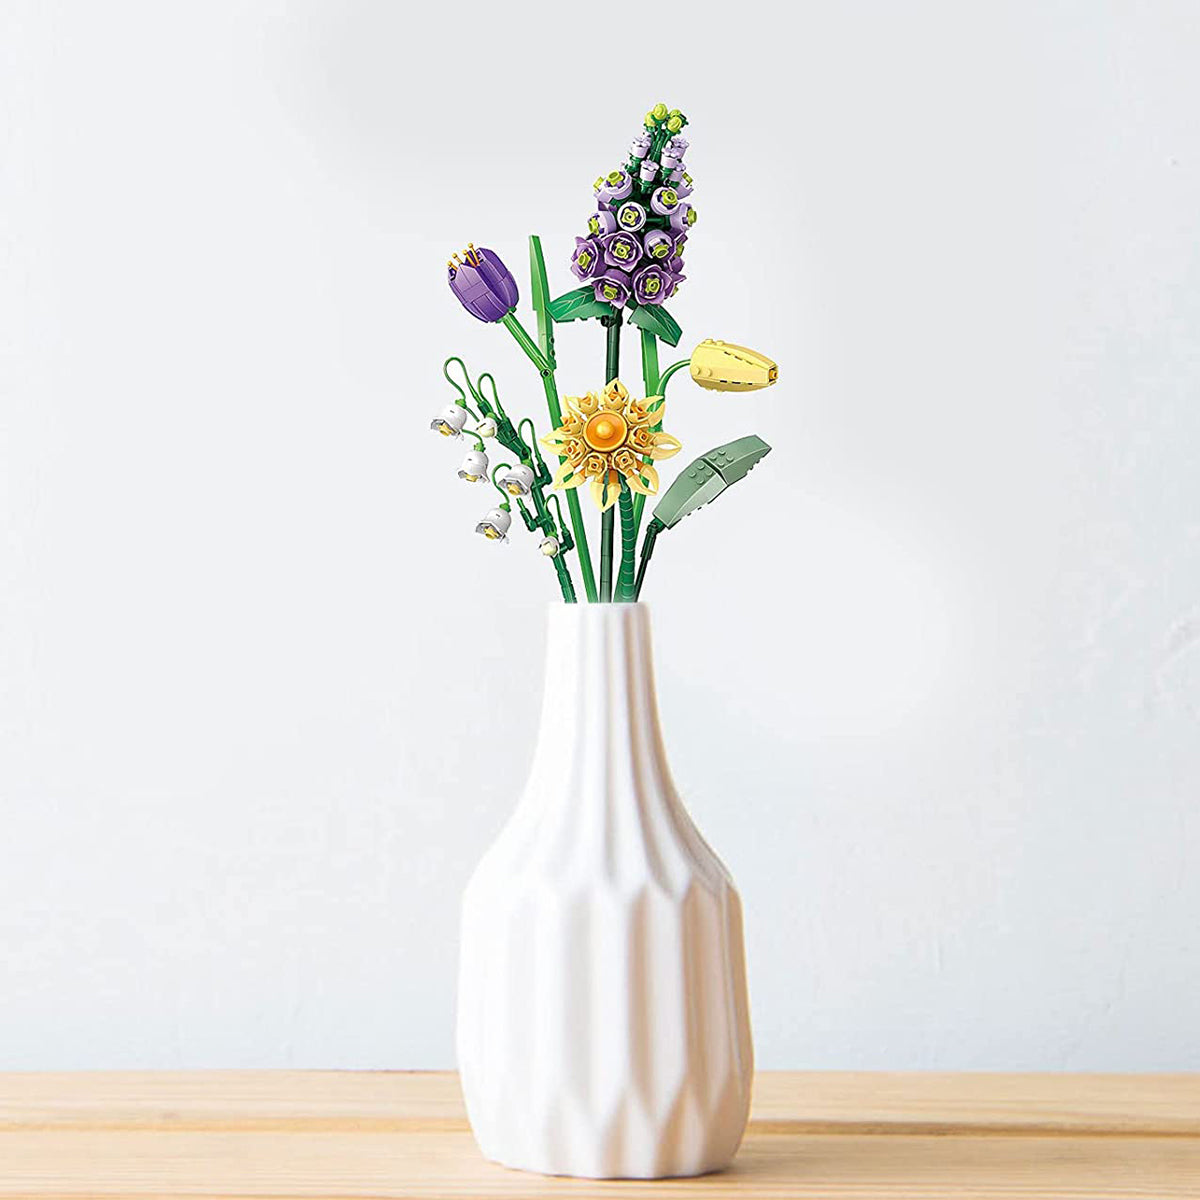 Unique Mother's Day gift idea: Flower Bouquet Building Blocks